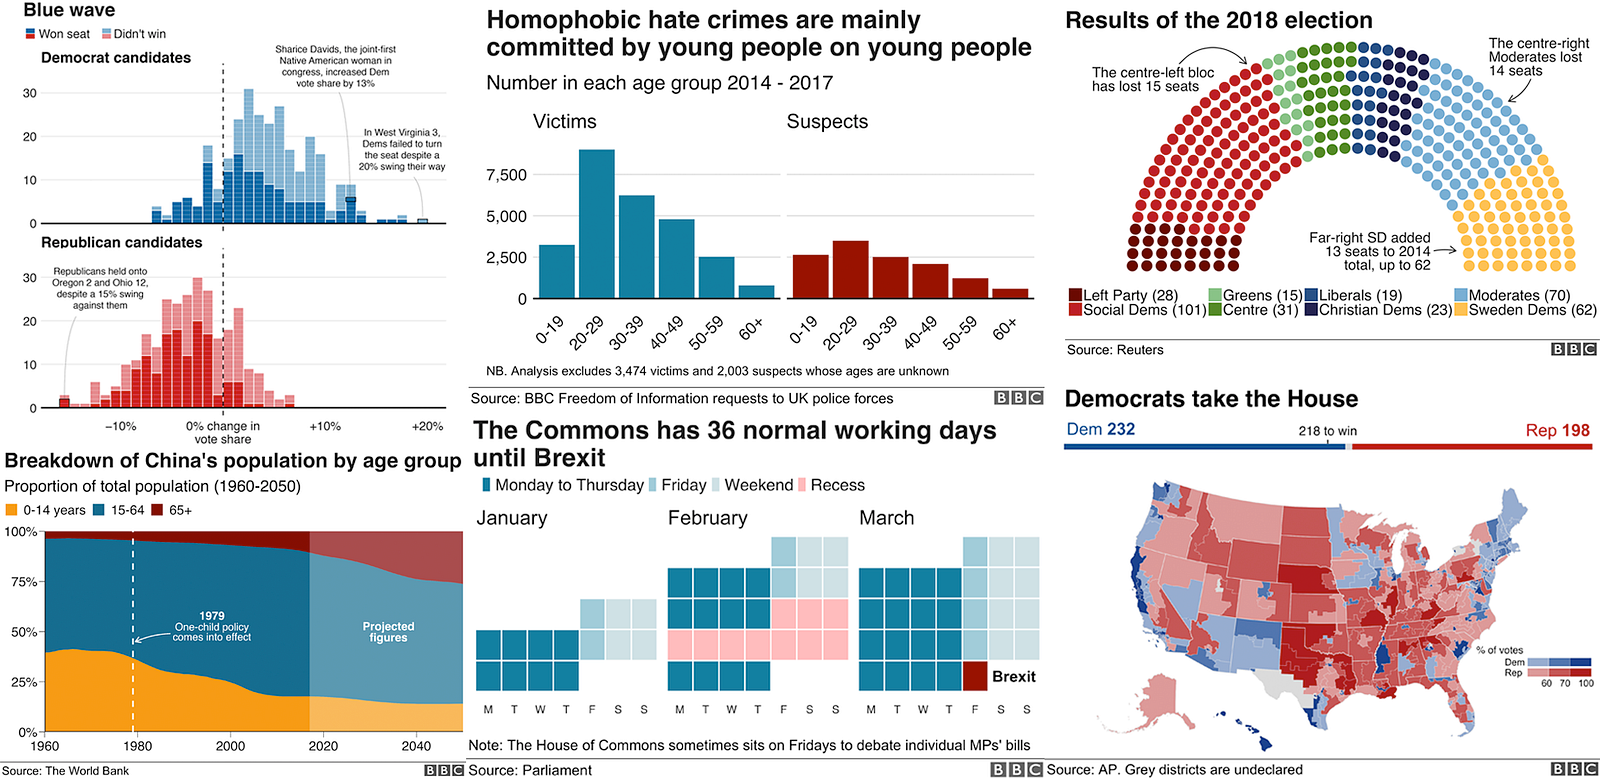 BBC Visual and Data Journalism